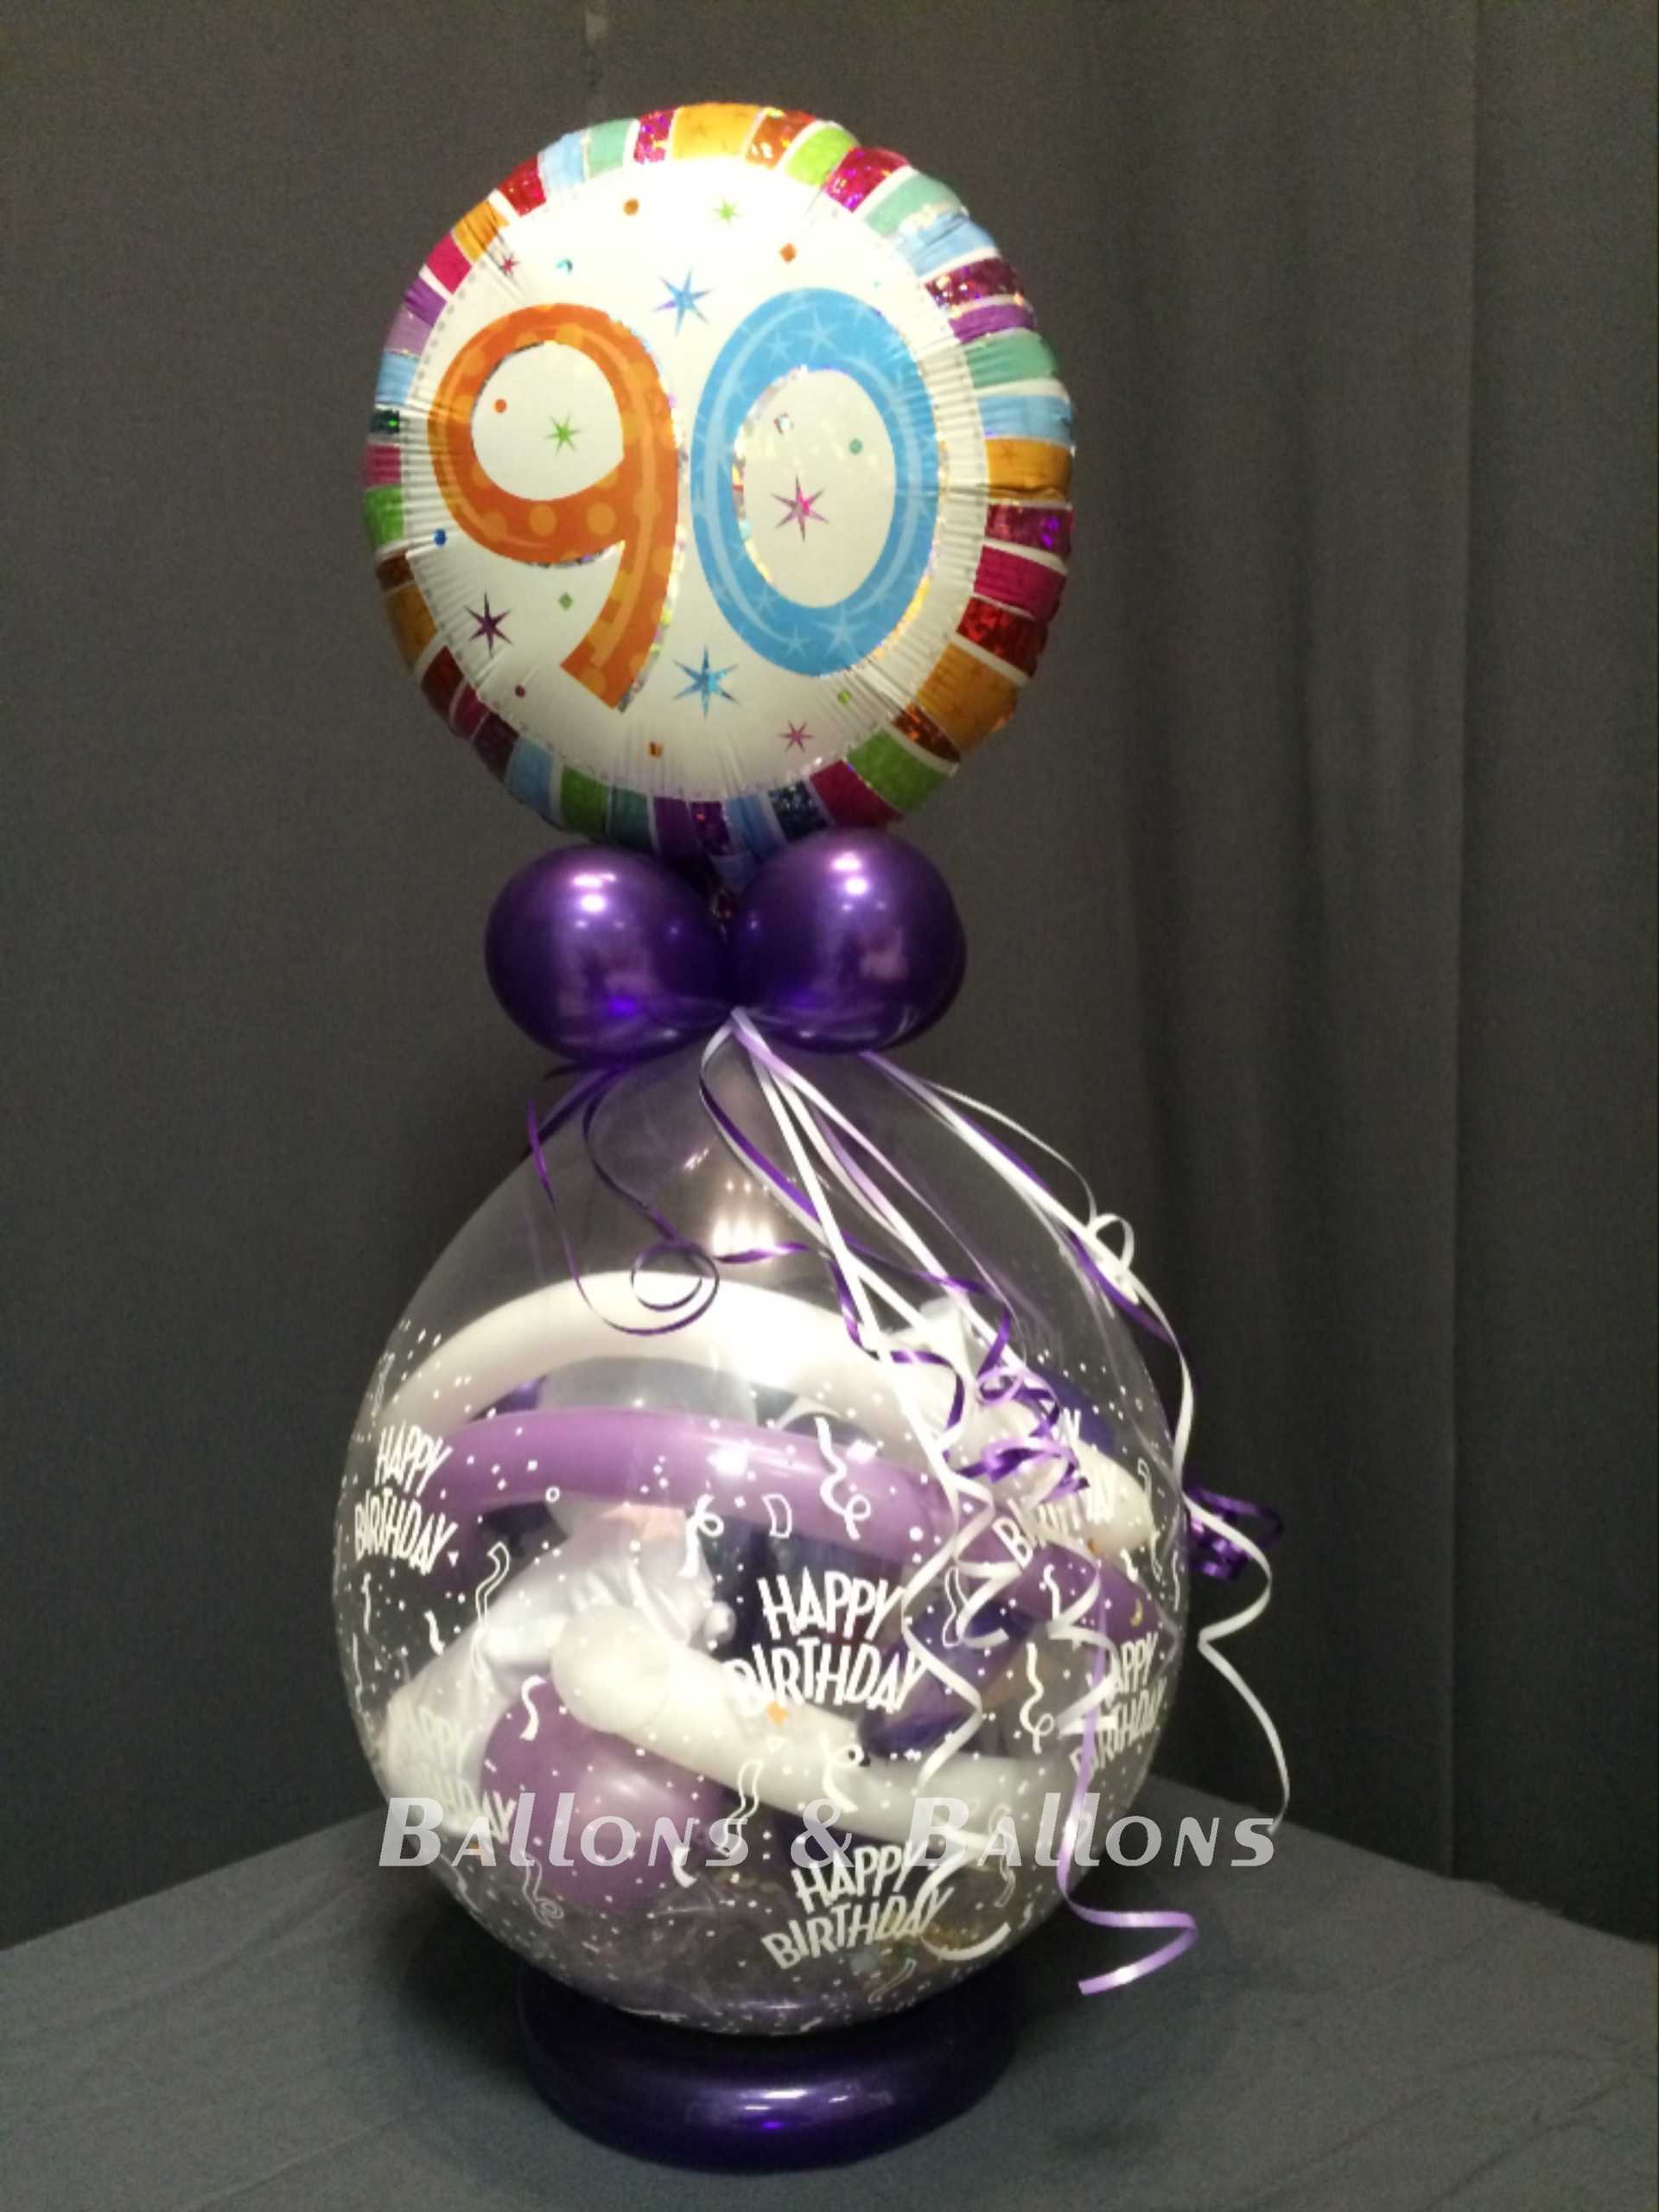 Ein 90. Geburtstagsballon und Ballondekoration in einer Glasvase.